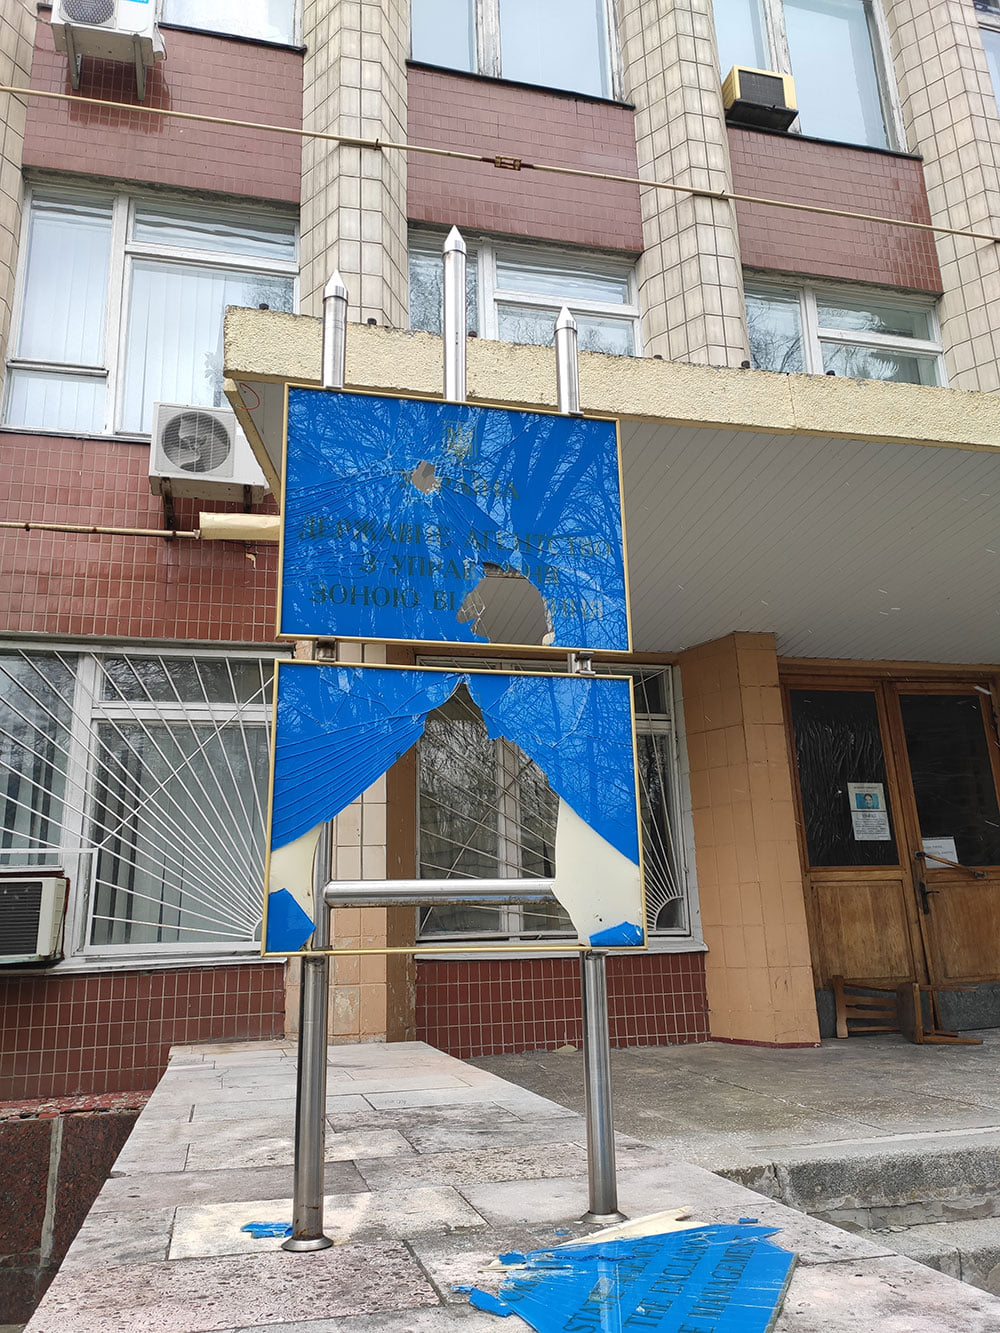  Agencia Estatal de Ucrania para la Gestión de Zonas de Exclusión